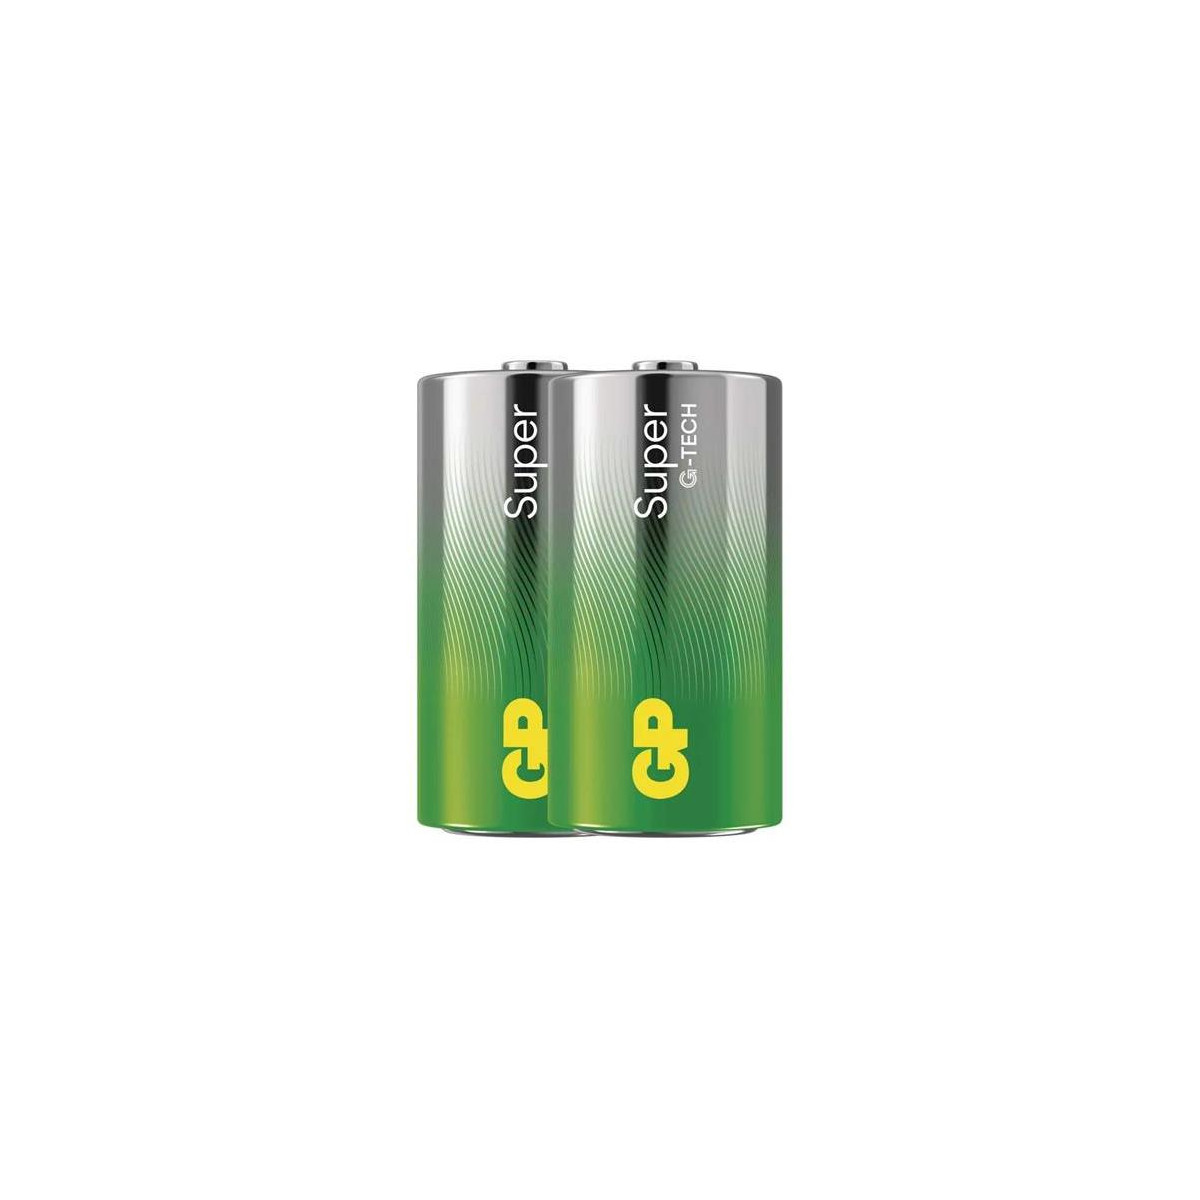 More about Baterie C (R14) alkalická GP Super 2ks (fólie)